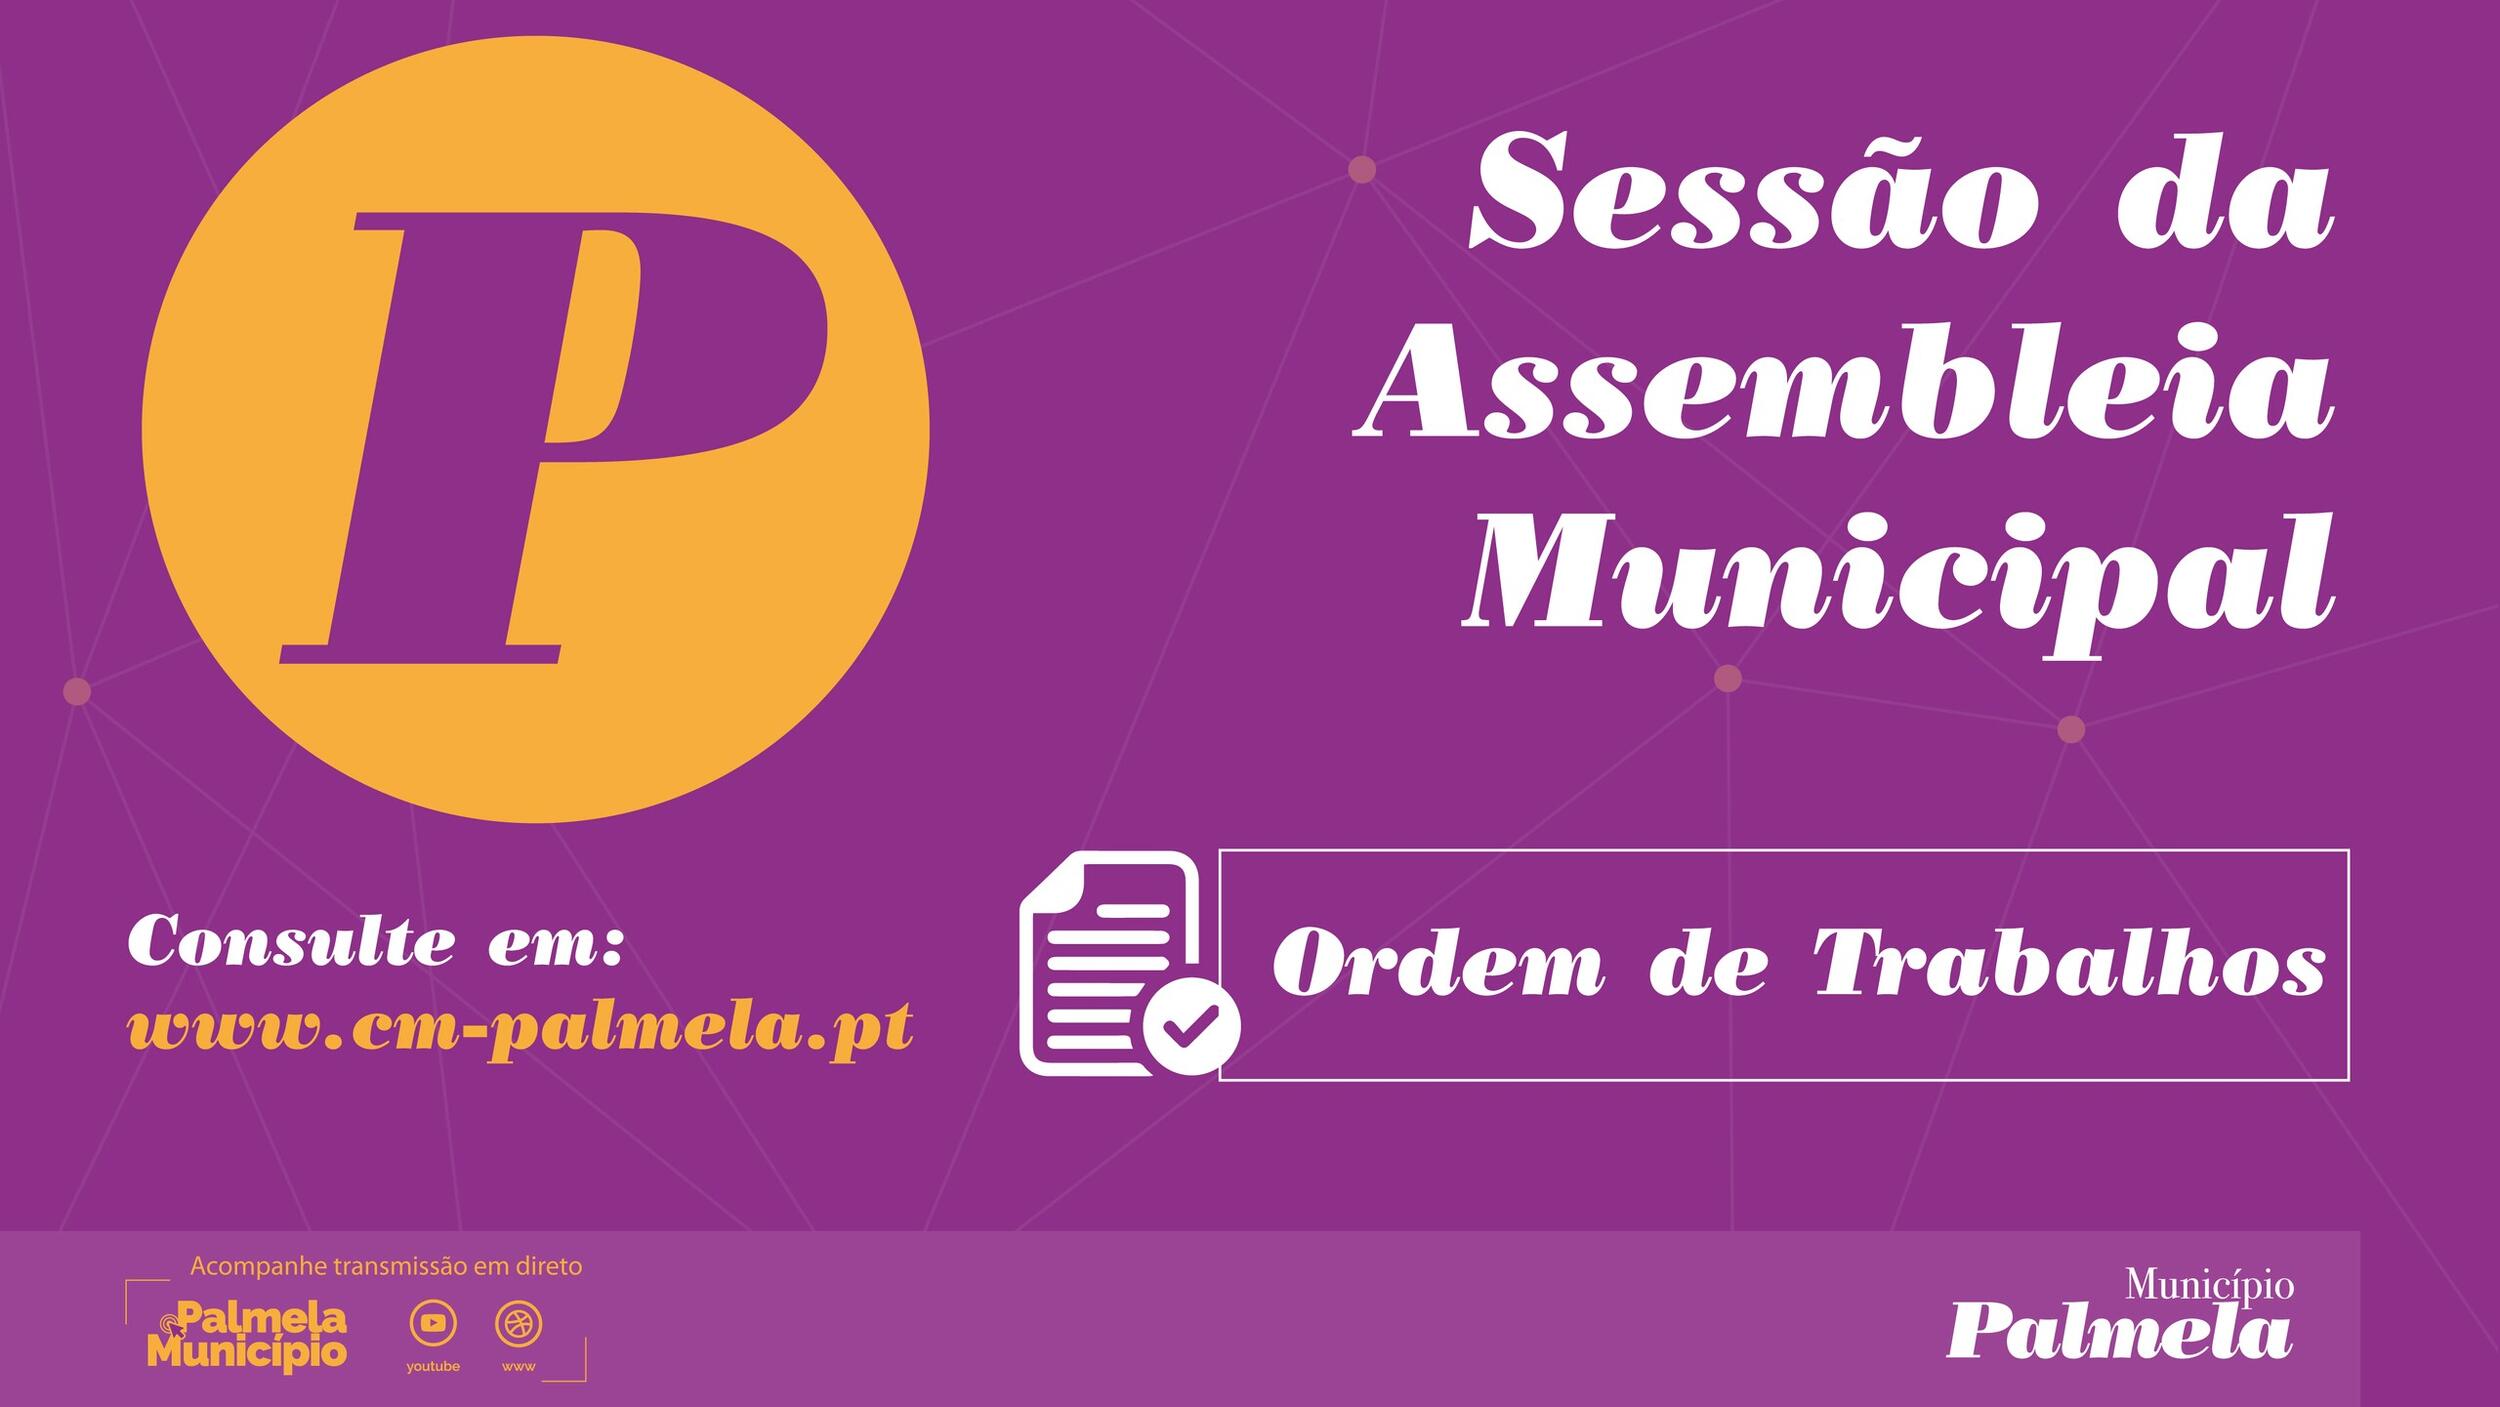 Assembleia Municipal - Reunião Extraordinária a 5 de dezembro